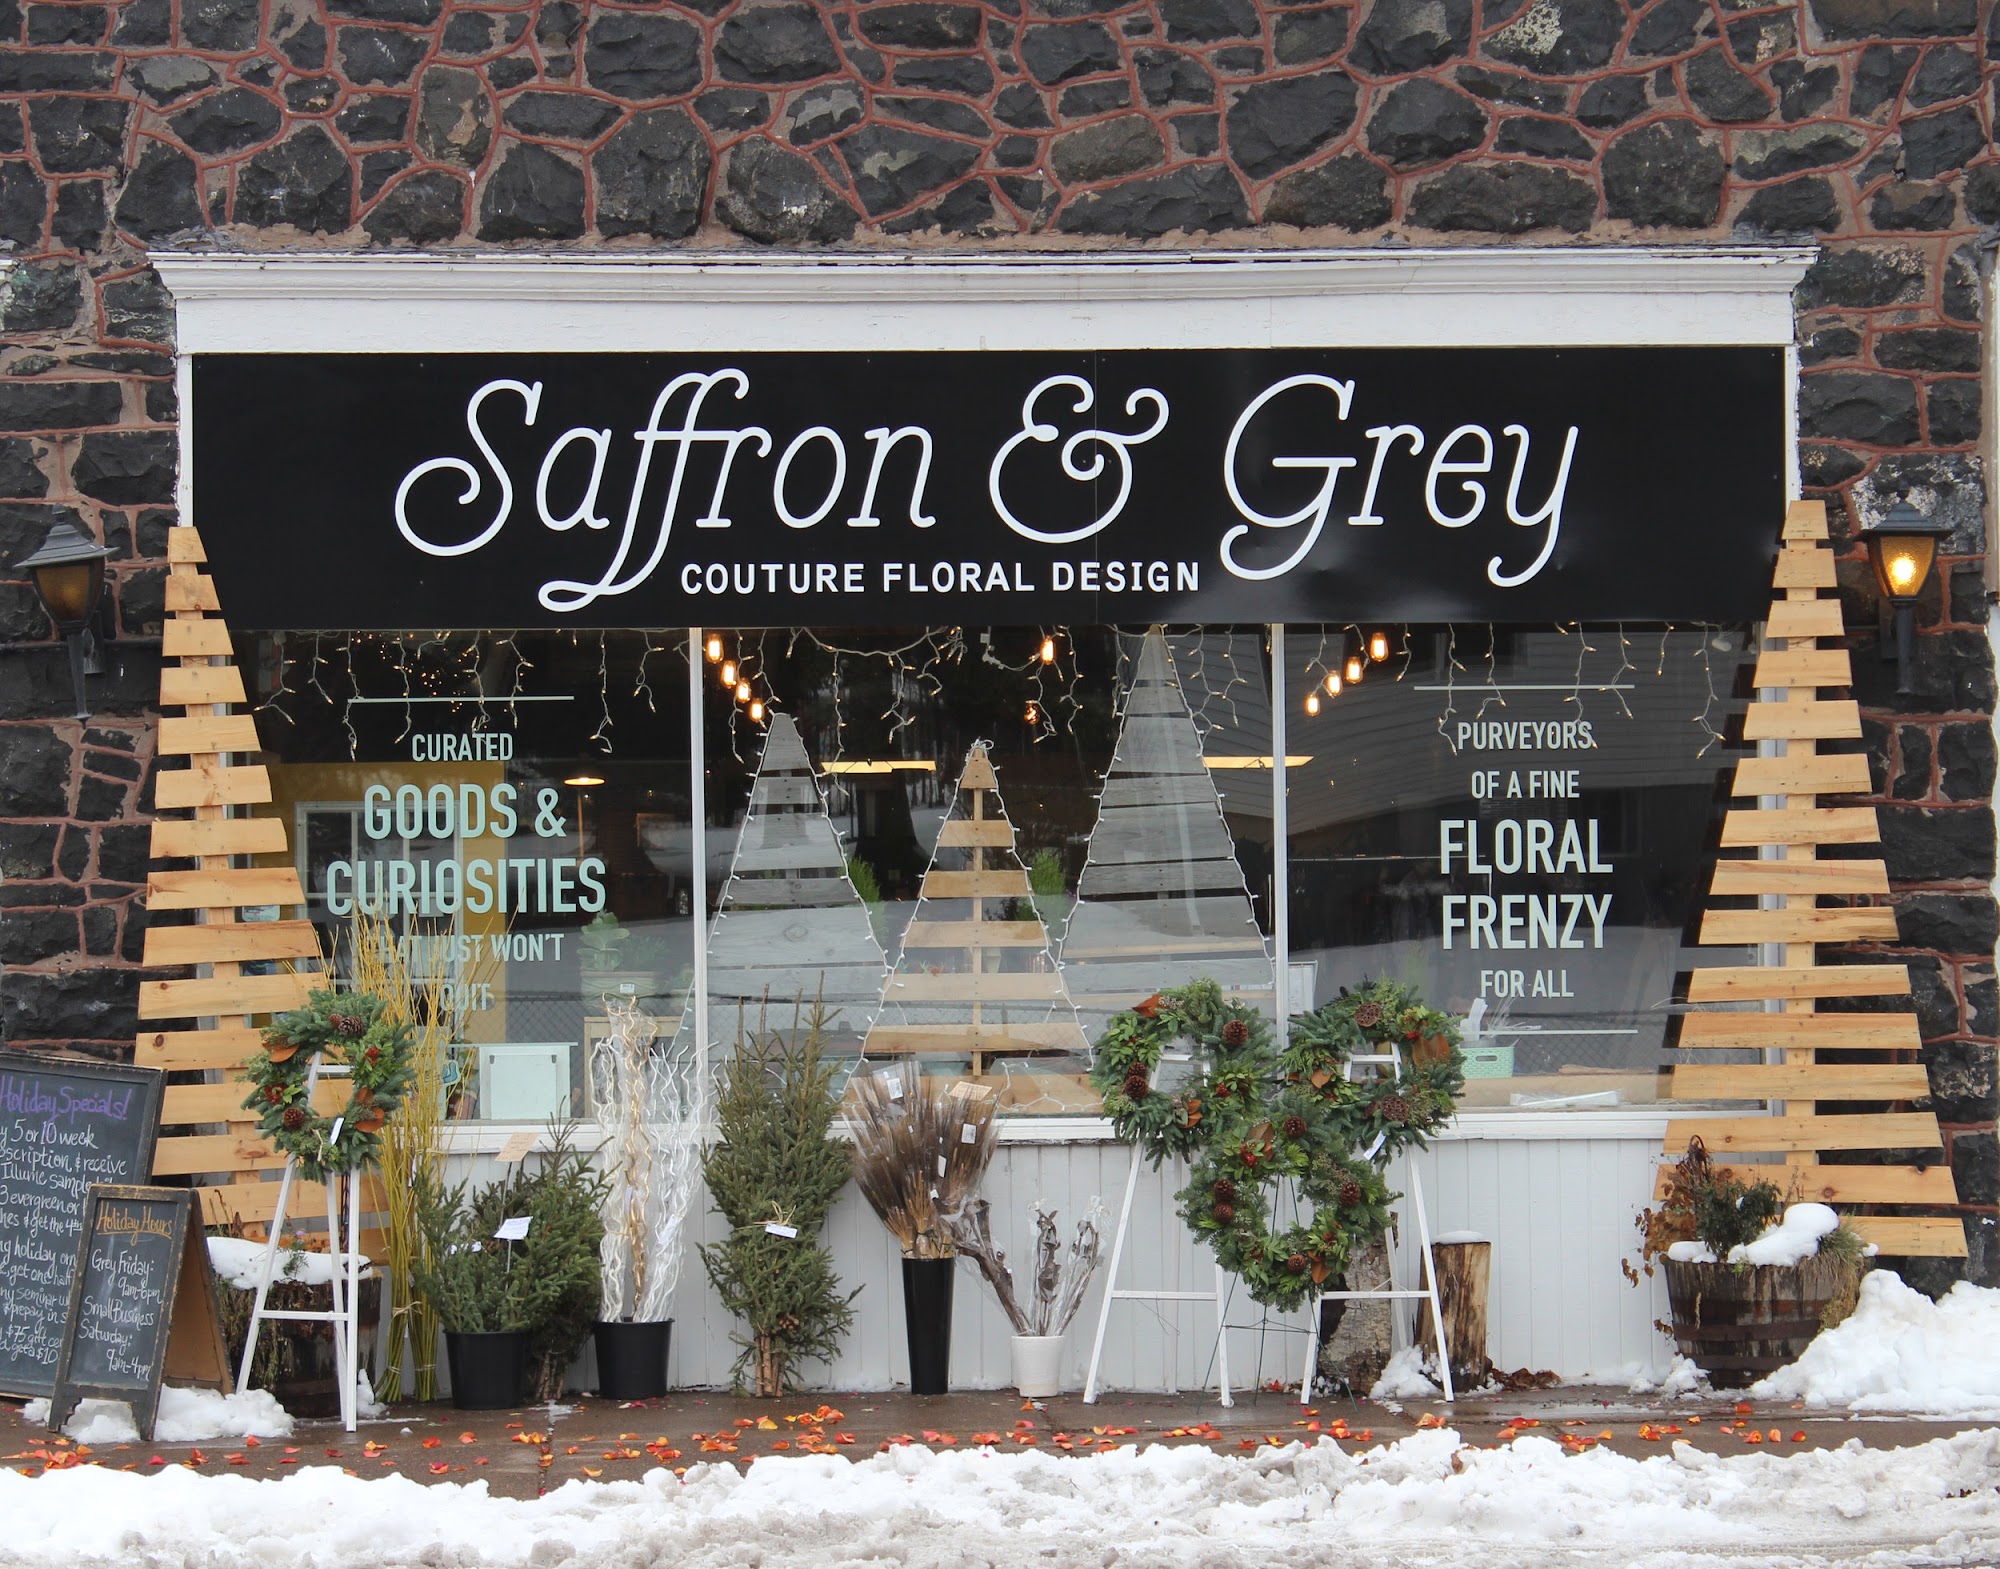 Saffron & Grey Couture Floral Design